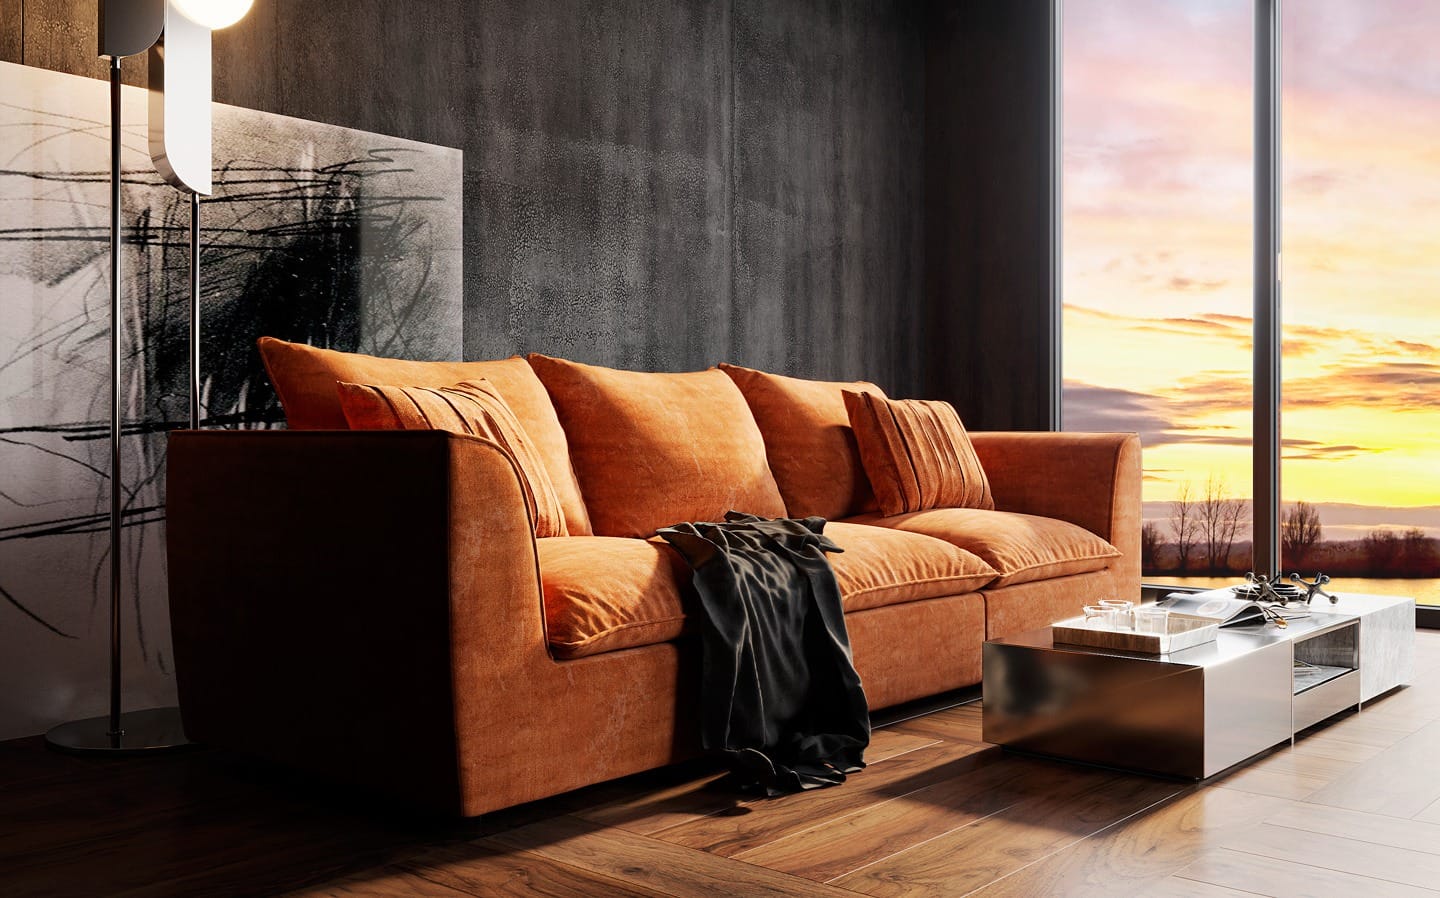 Чехол-накидка на диван: на резинке или натяжной. Какой выбрать